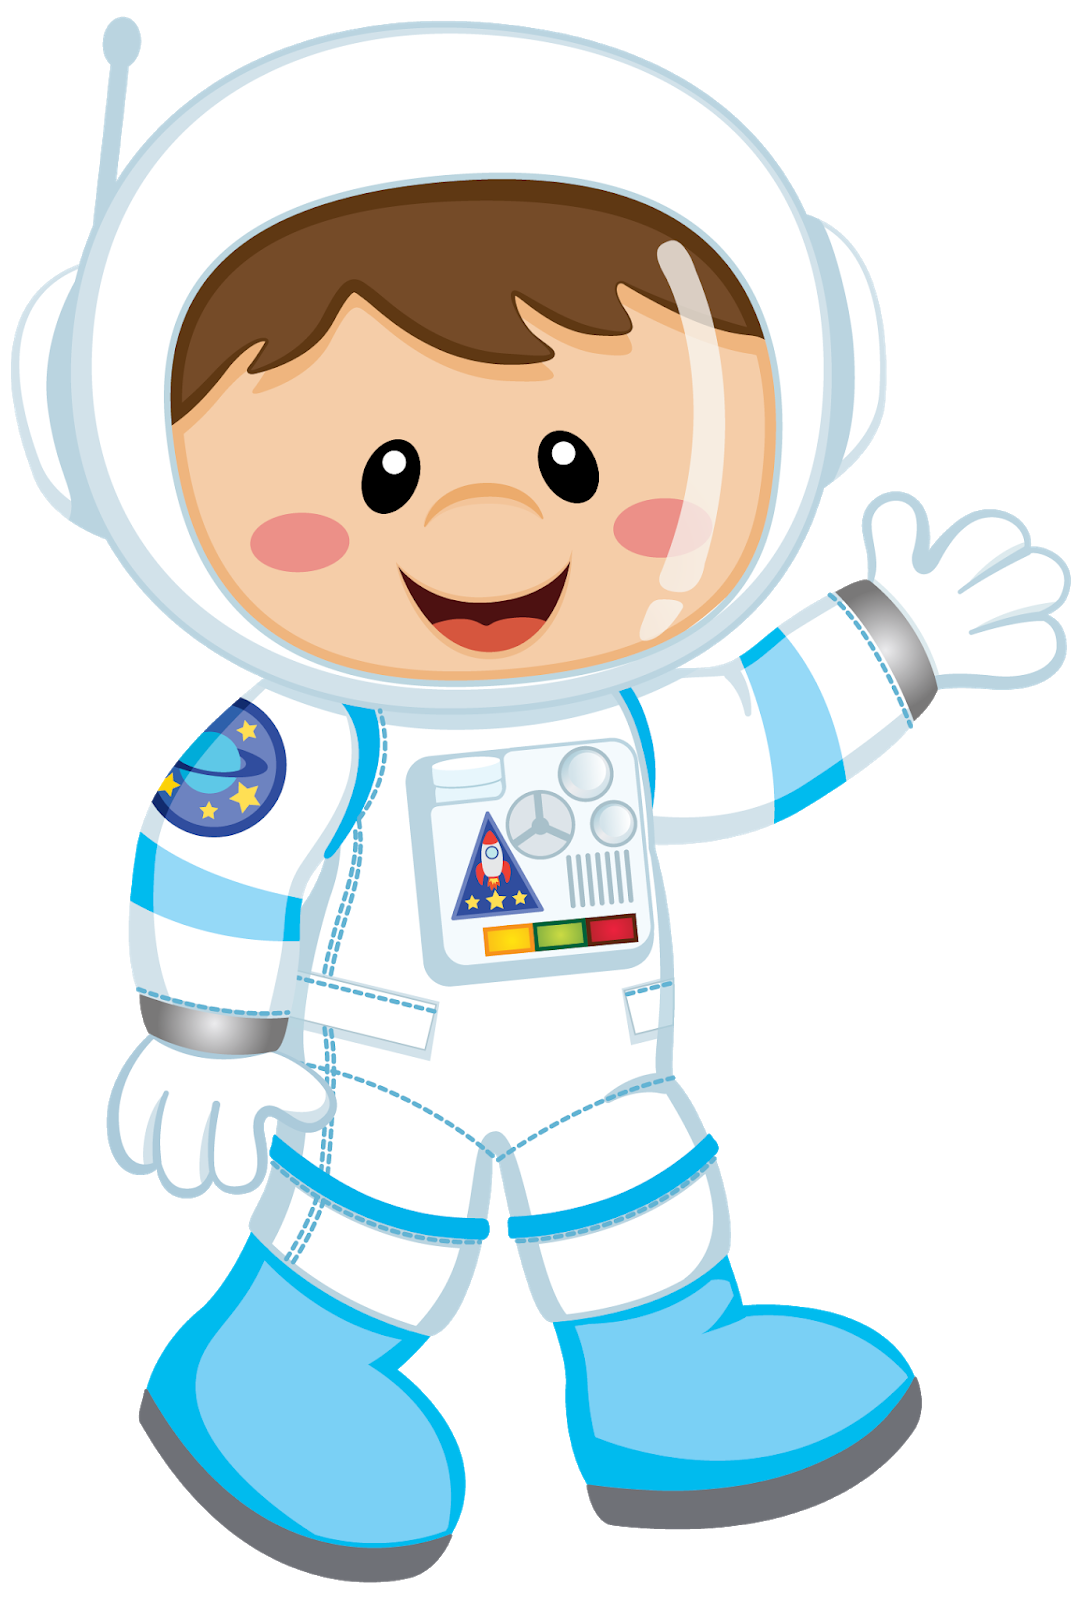 Иллюстрация скафандра для детей. Космонавт для детей. Человечки в скафандрах. Космонавт мультяшный.